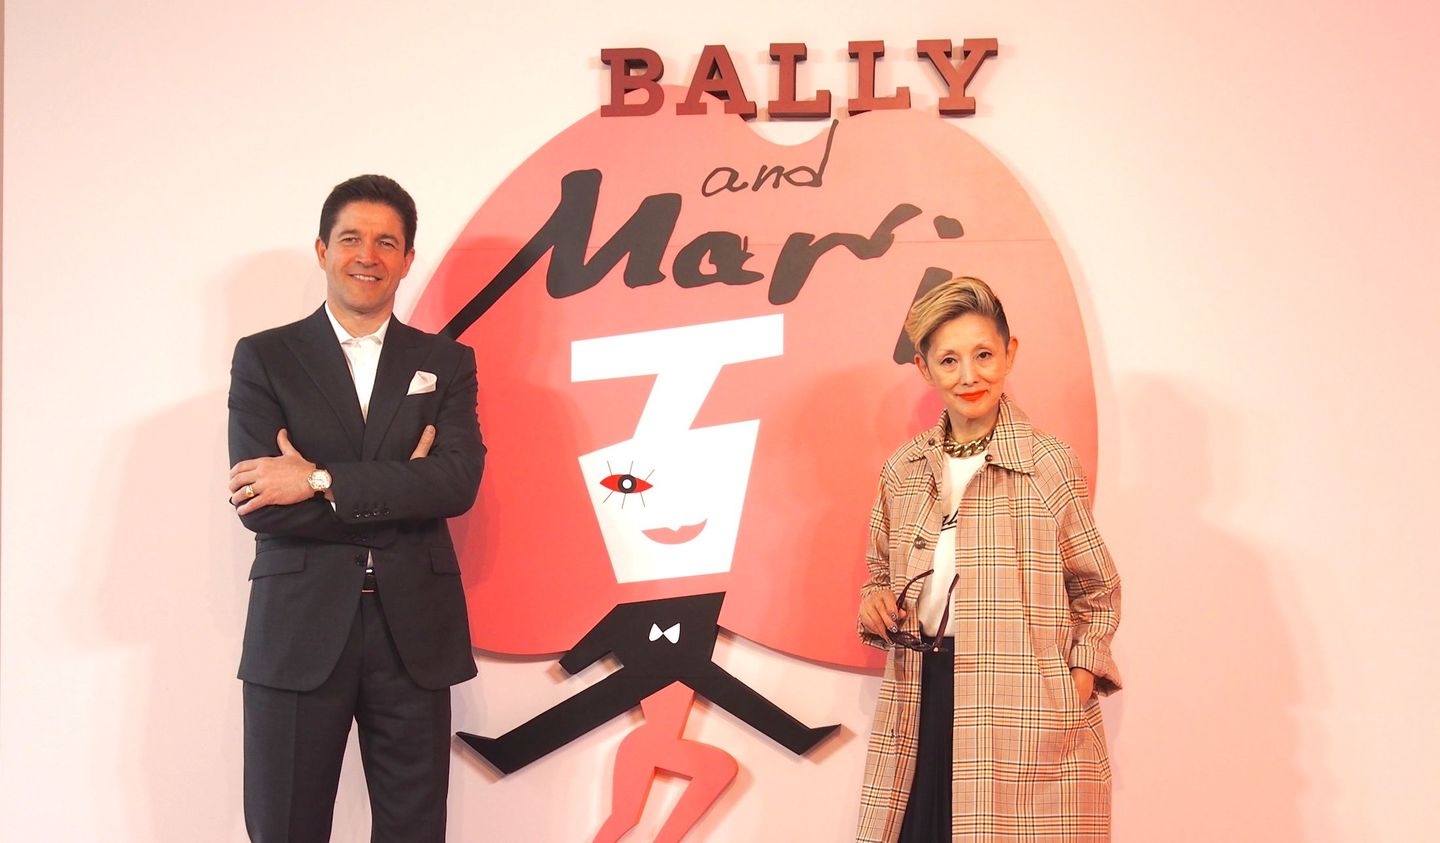 歌手で俳優の夏木マリさんとバリー チーフ エグゼクティブ オフィサーであるフェデリック・ドゥ・ナープさんの「BALLY and Mari」会見時の写真